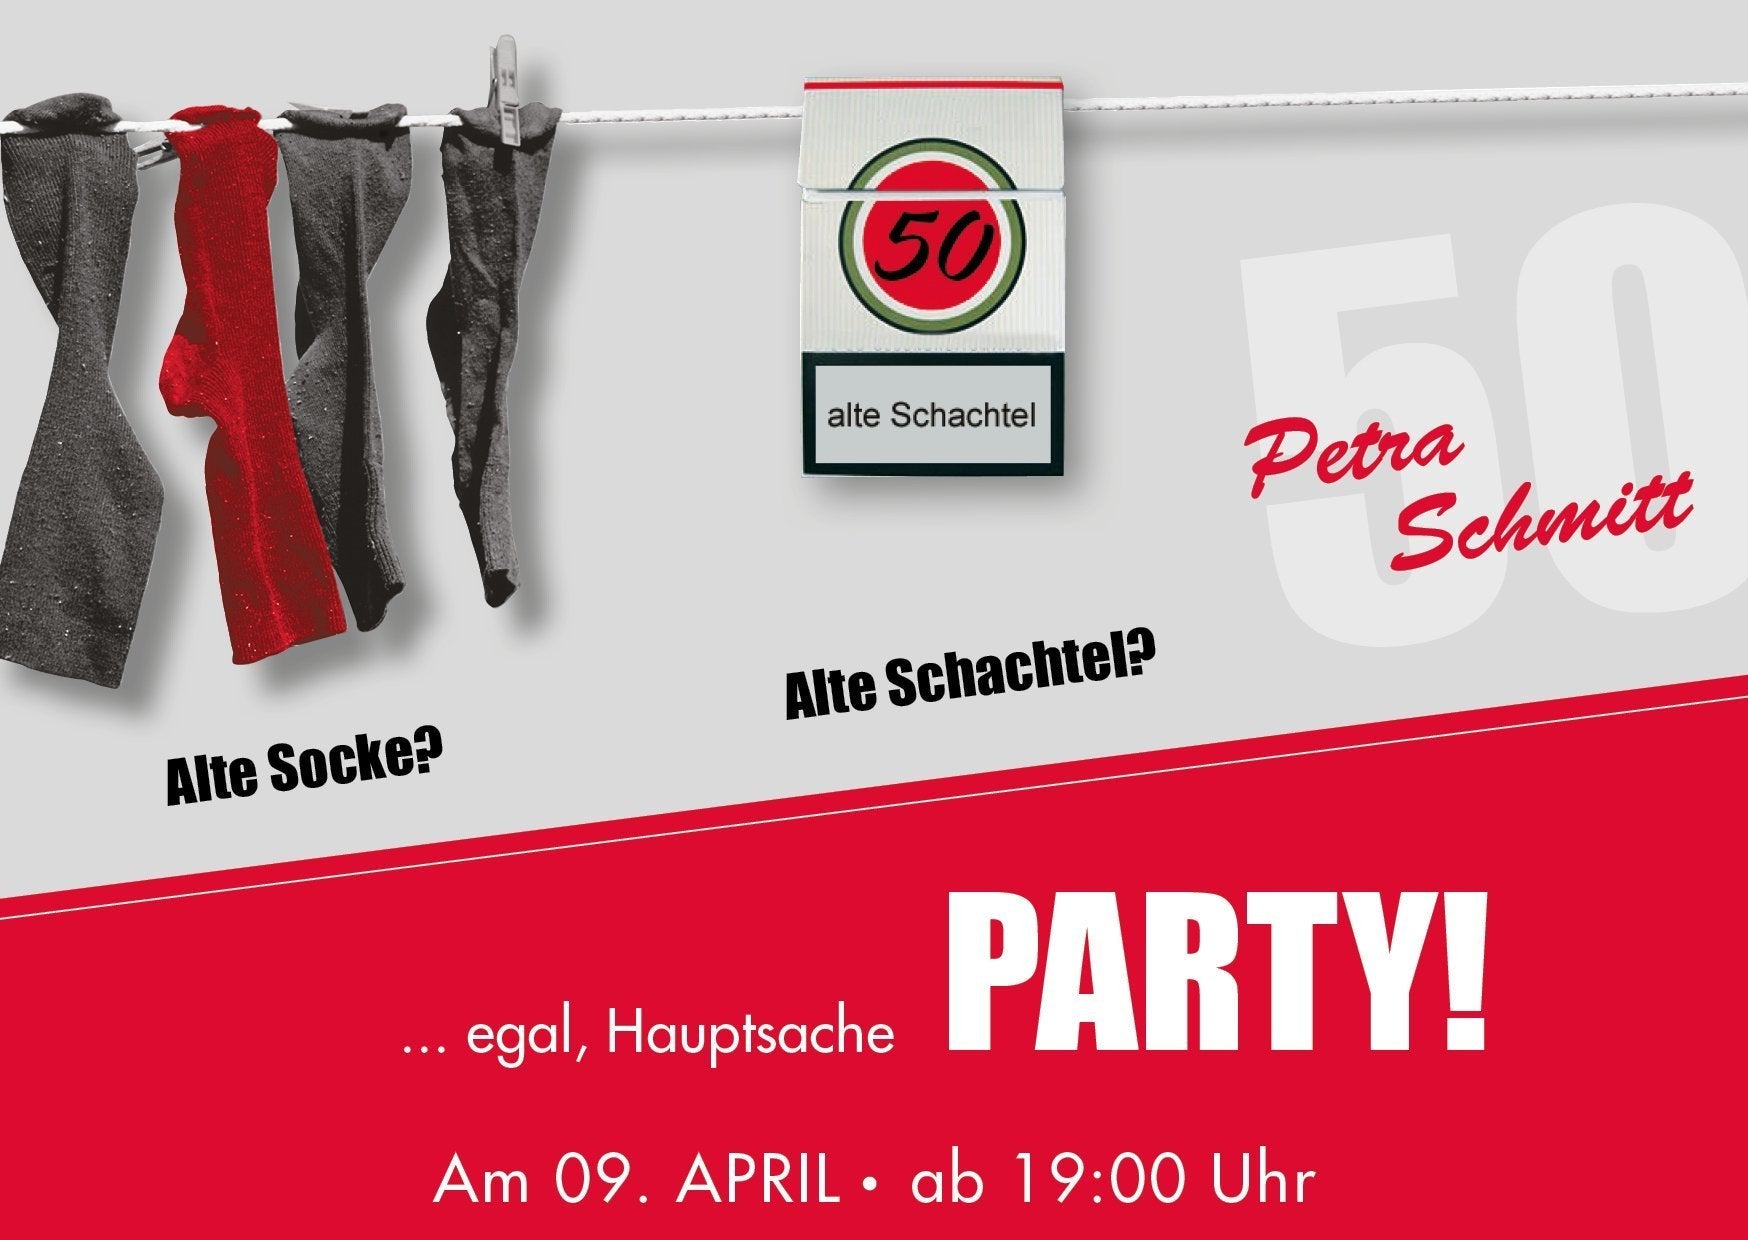 Einladung zum 50. Geburtstag: Alte Socke, Alte Schachtel Individuelle Einladung